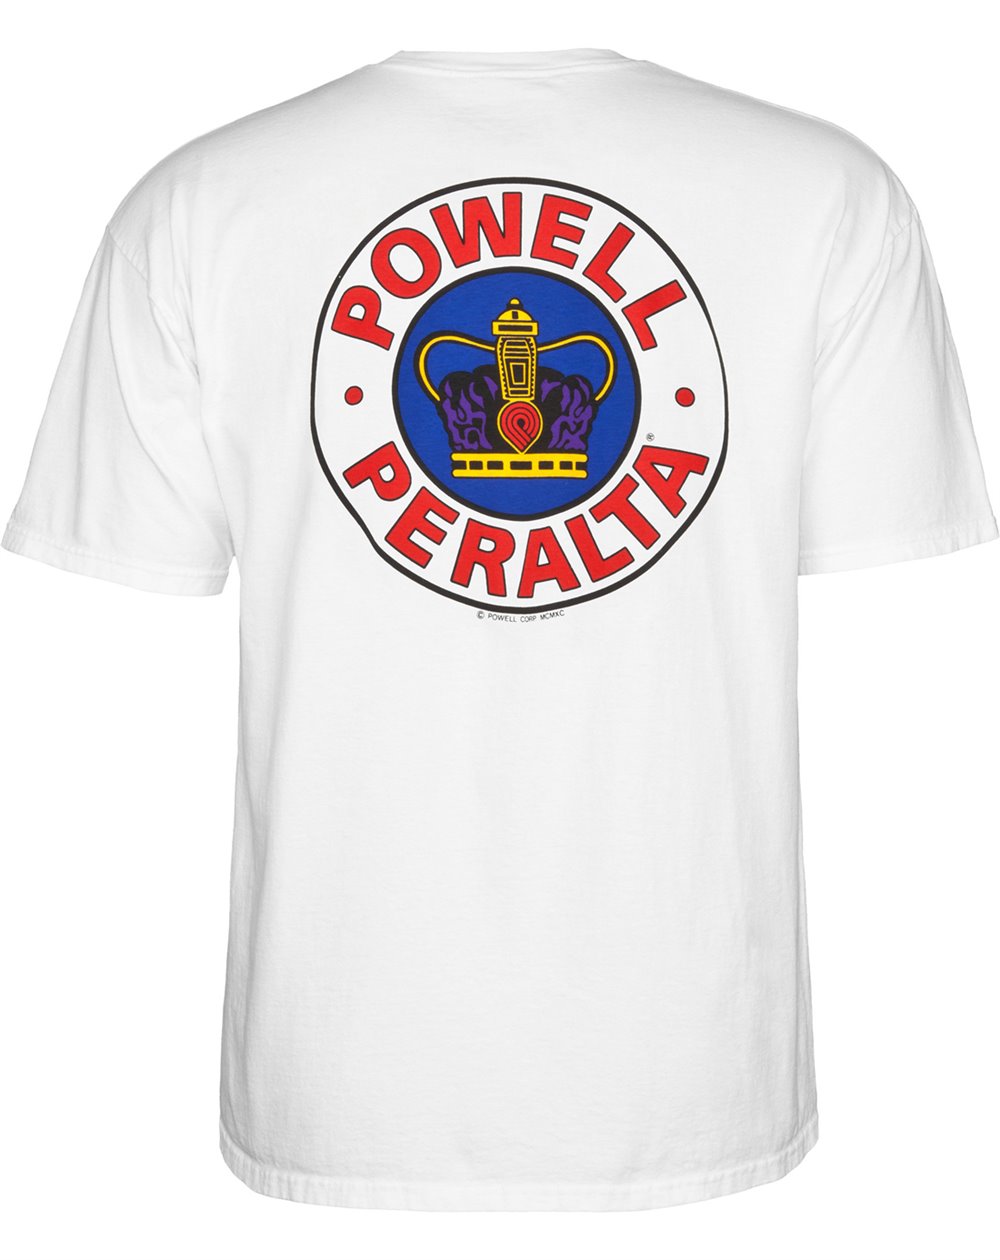 Powell Peralta Men's T-Shirt Supreme White